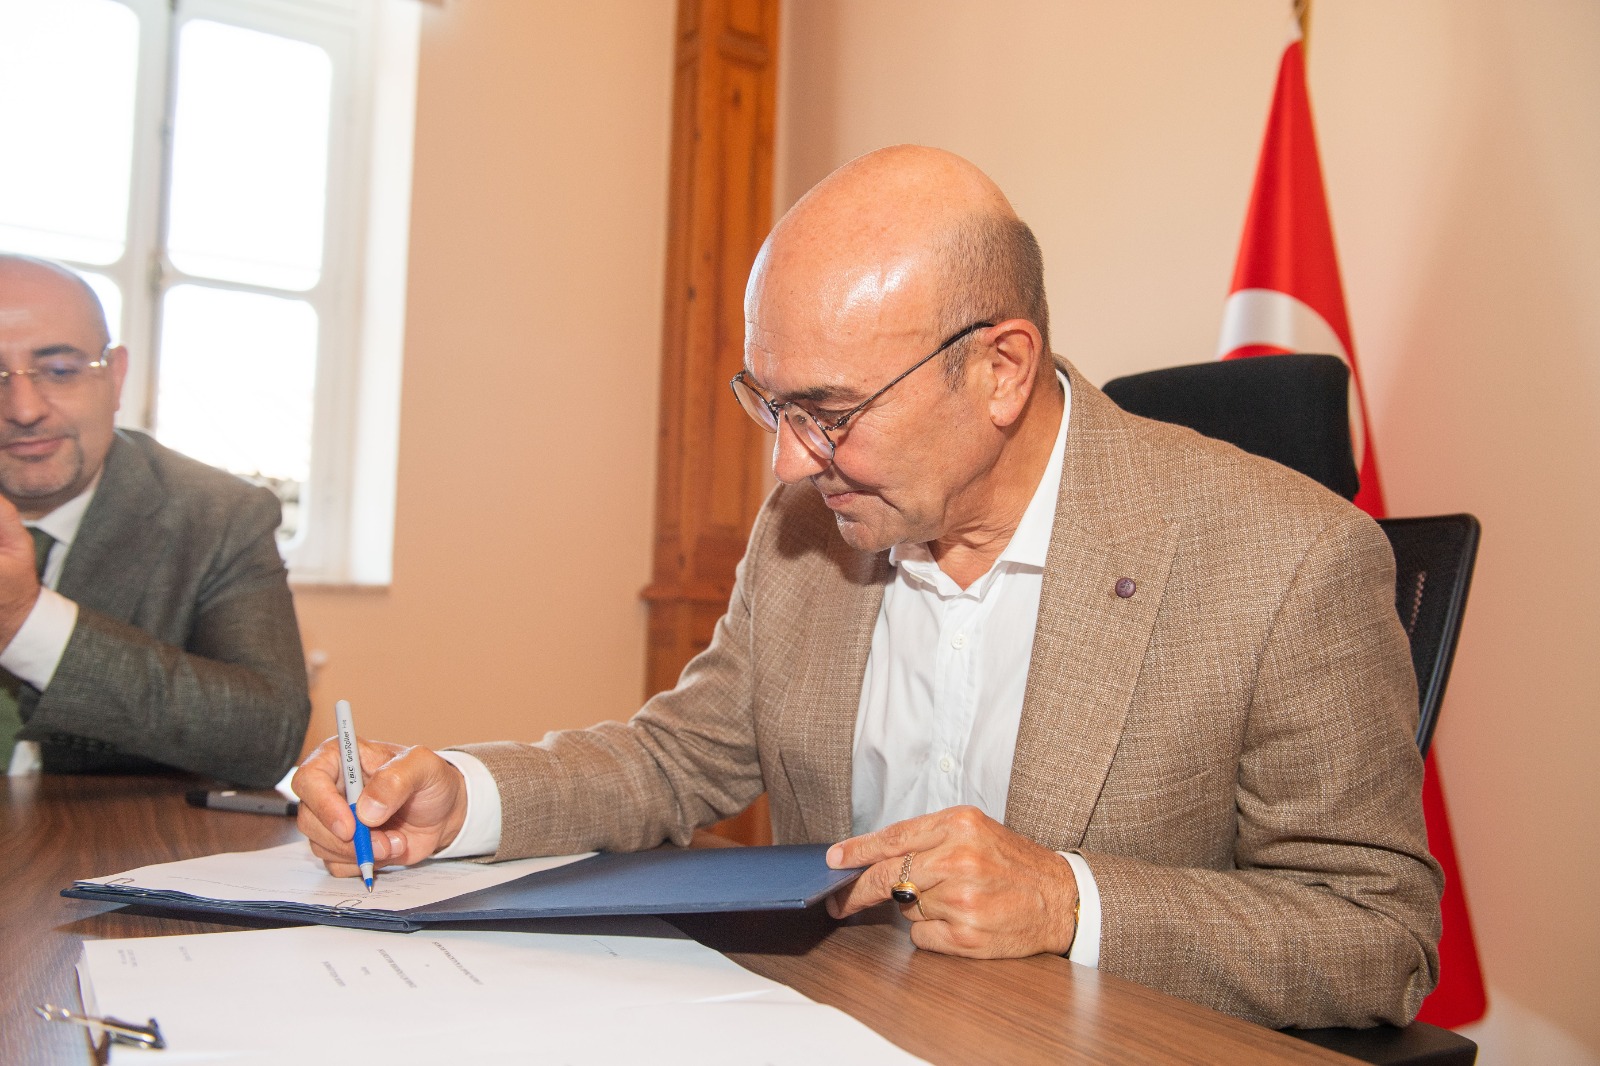 İzmir tarihinin en büyük yatırımı için ilk kredi sözleşmesi imzalandı Üçyol-Buca Metrosu için Avrupa’dan 125 milyon avro kredi